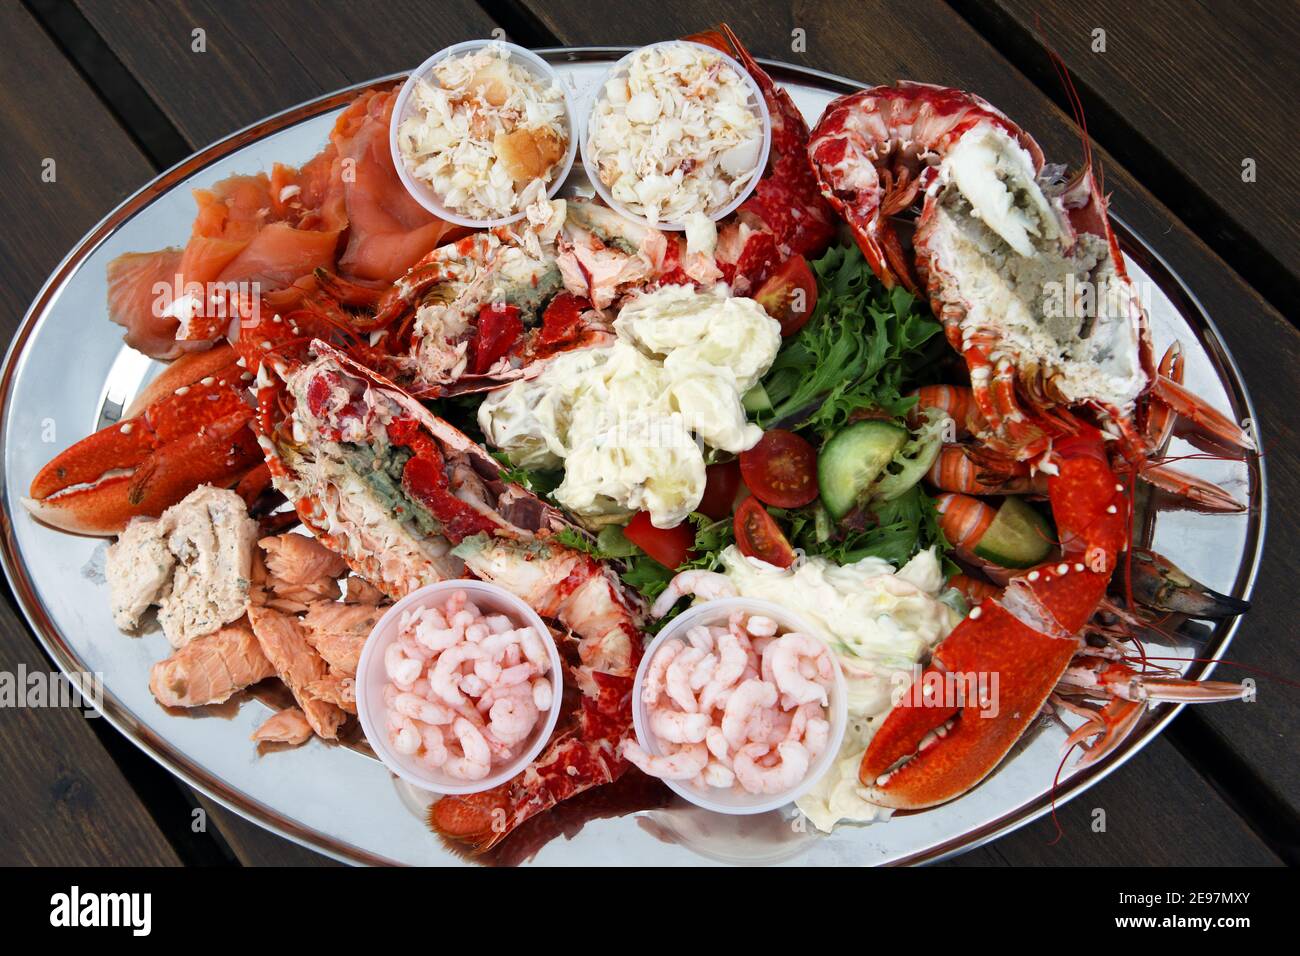 Plato de marisco escocés con langosta, gambas, salmón ahumado y escalfado, langostinos y cangrejo en una cama de ensalada Foto de stock